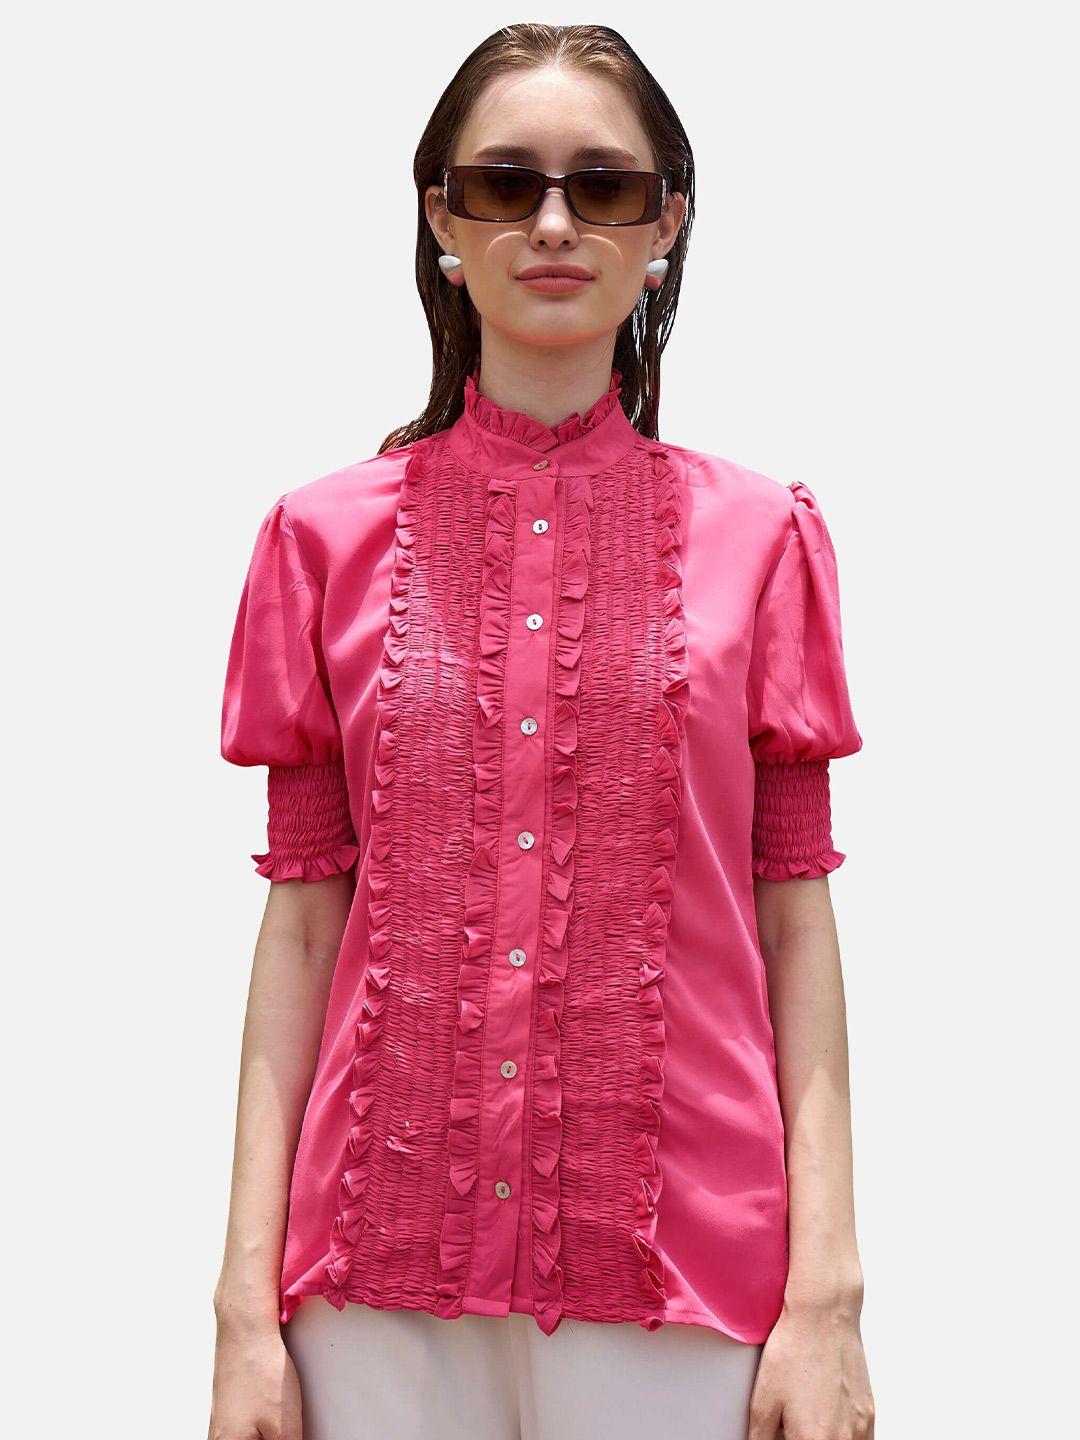 neofaa women pink casual shirt